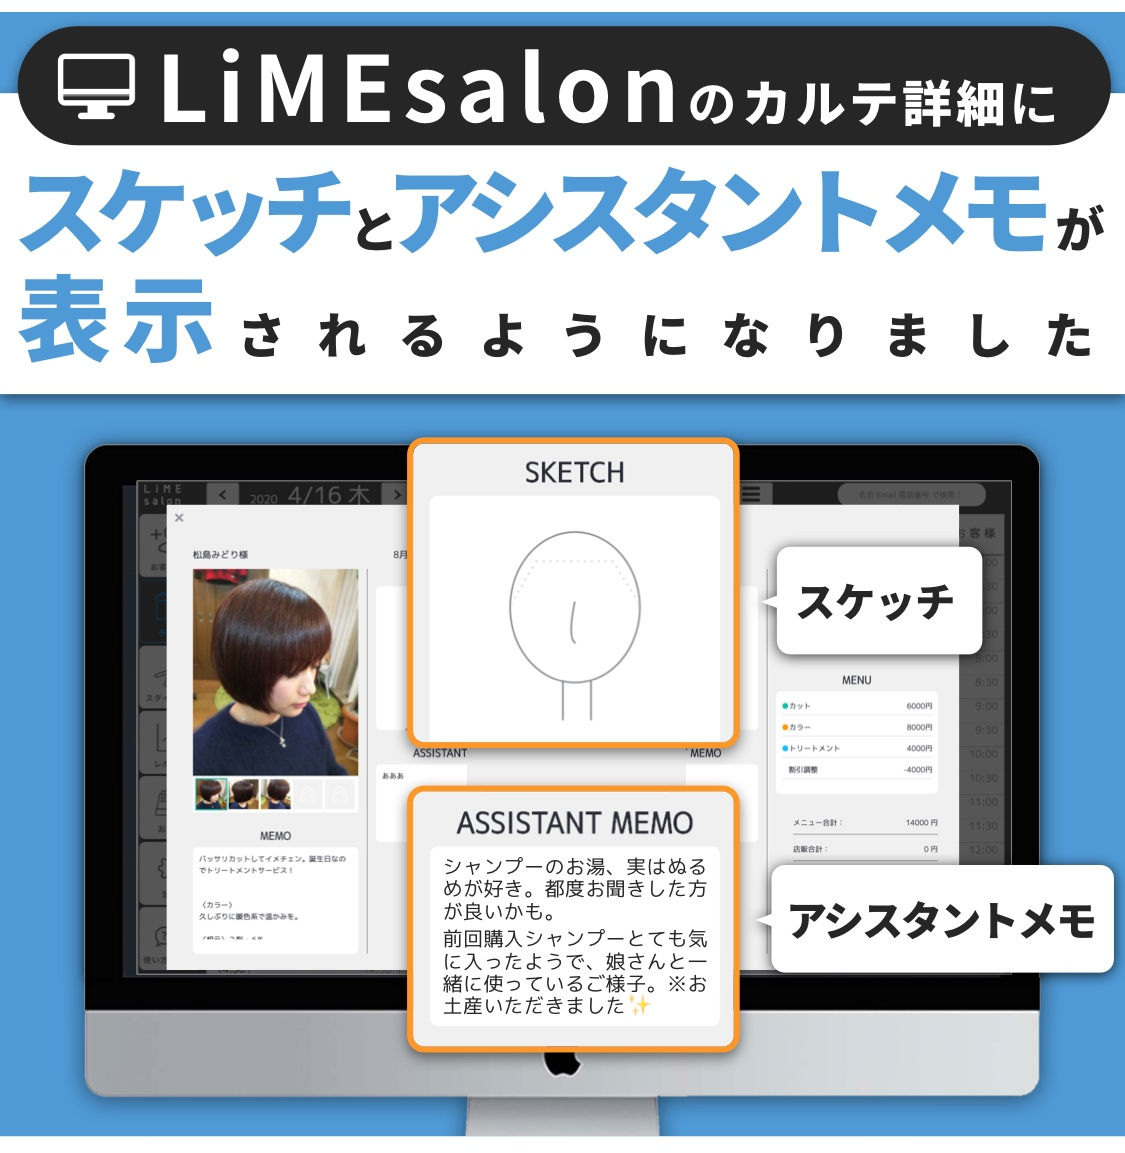 【新機能】LiMEsalonのカルテ詳細にスケッチとアシスタントメモが表示されるようになりました